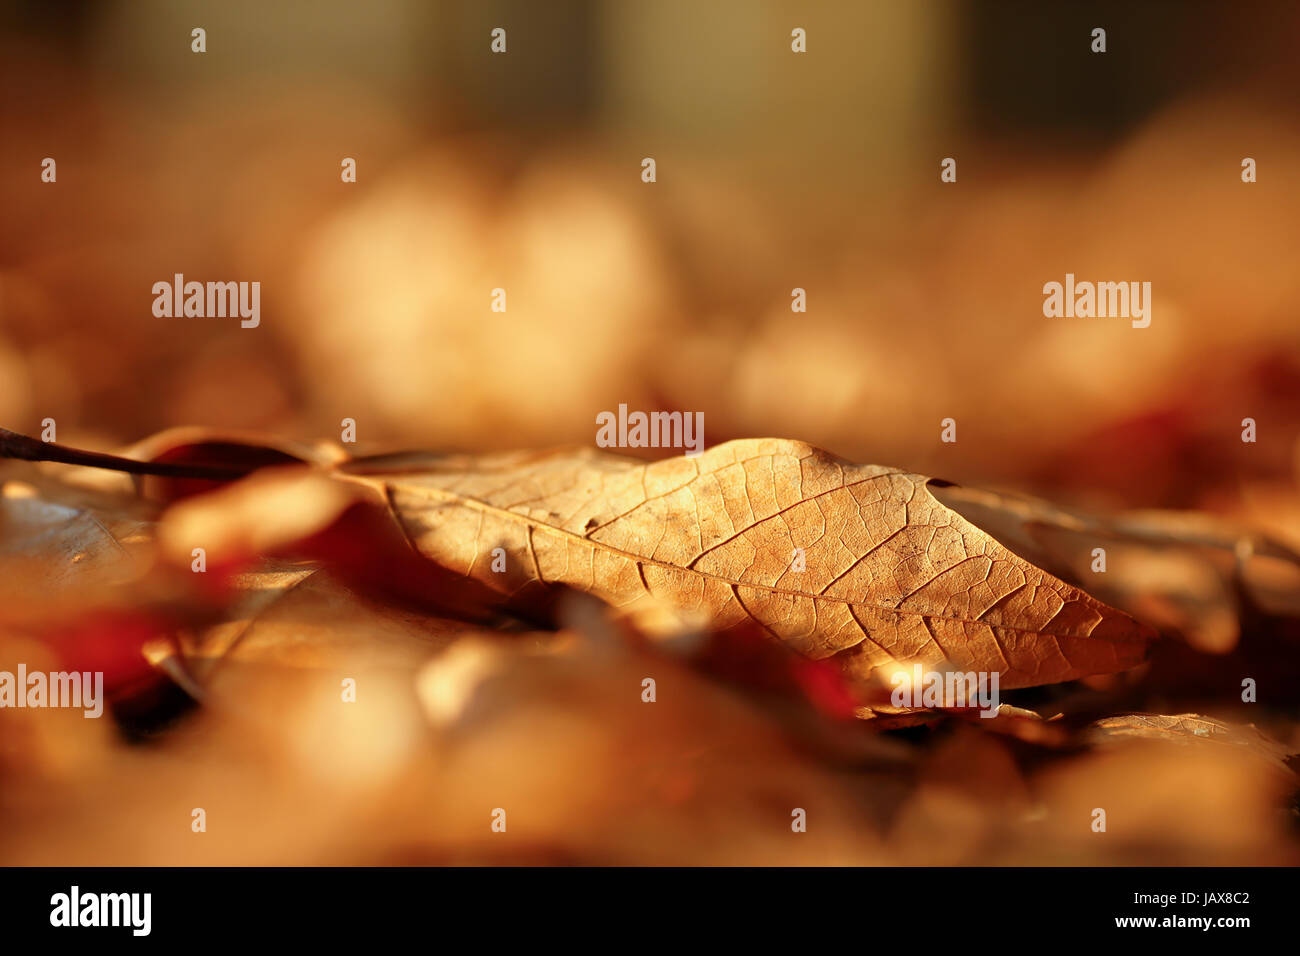 Autumn foliage Stock Photo